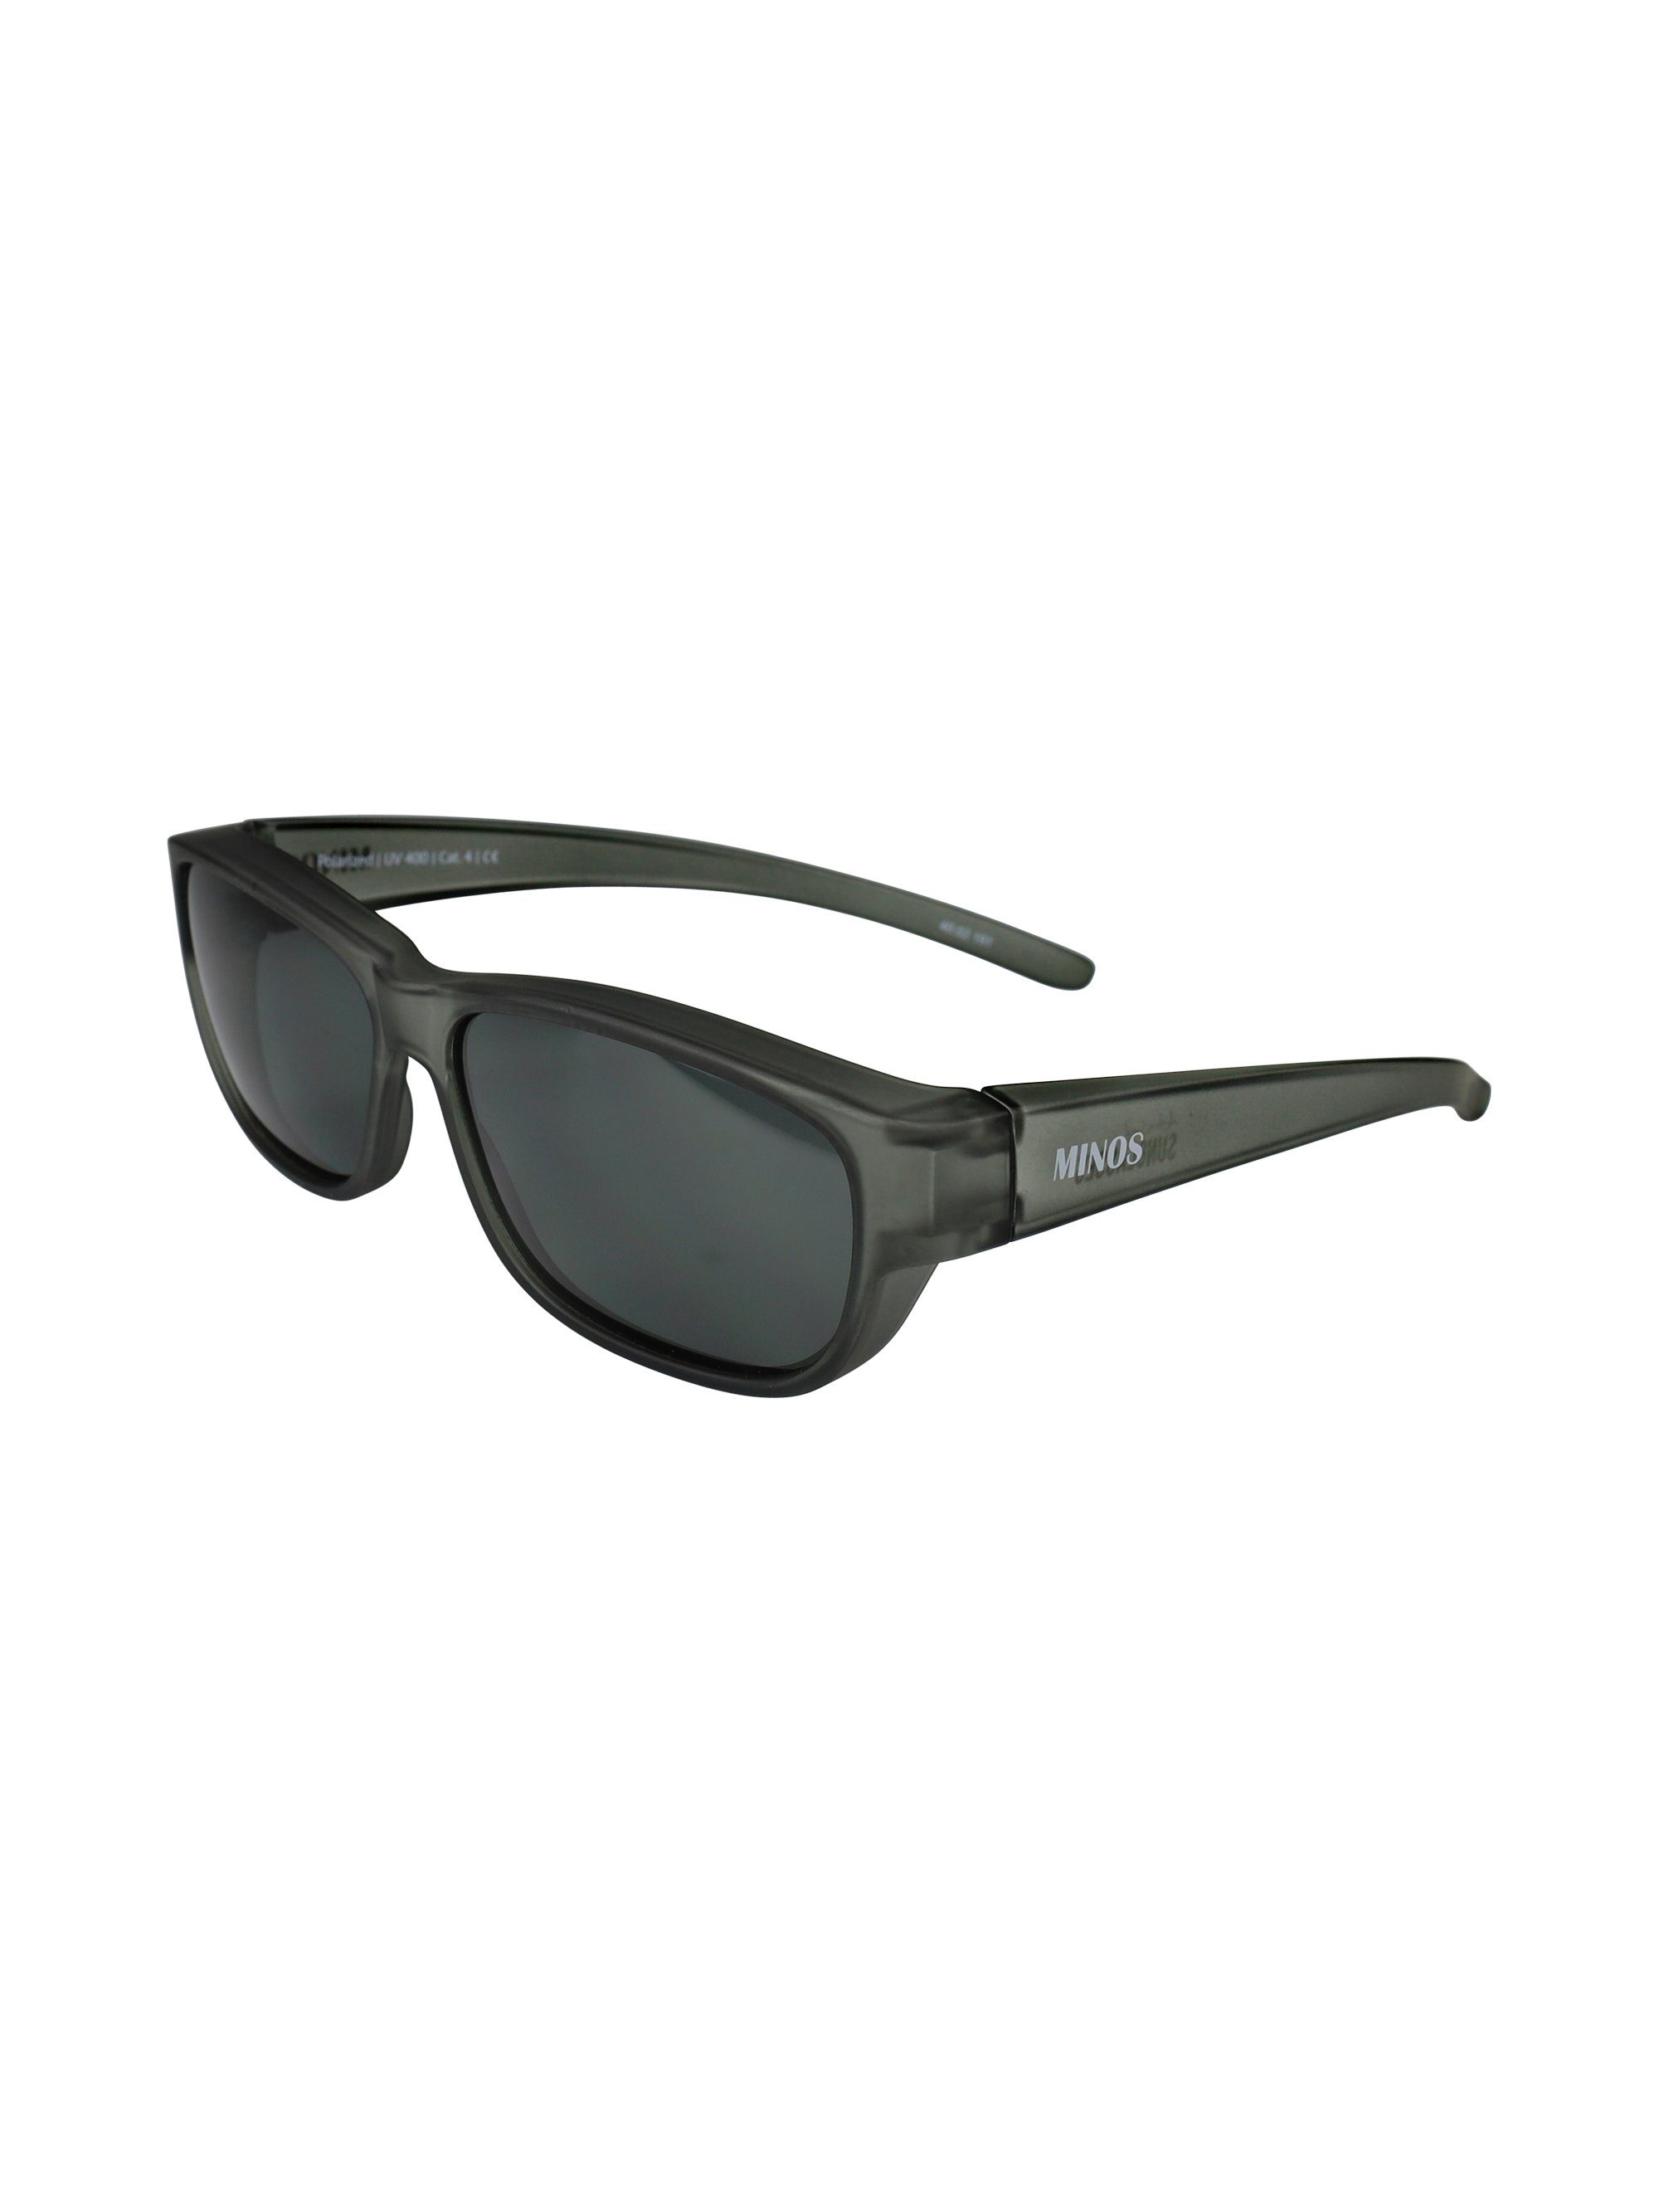 ActiveSol SUNGLASSES Sonnenbrille Überziehsonnenbrille Minos (inklusive Schiebebox und Brillenputztuch) schwarz